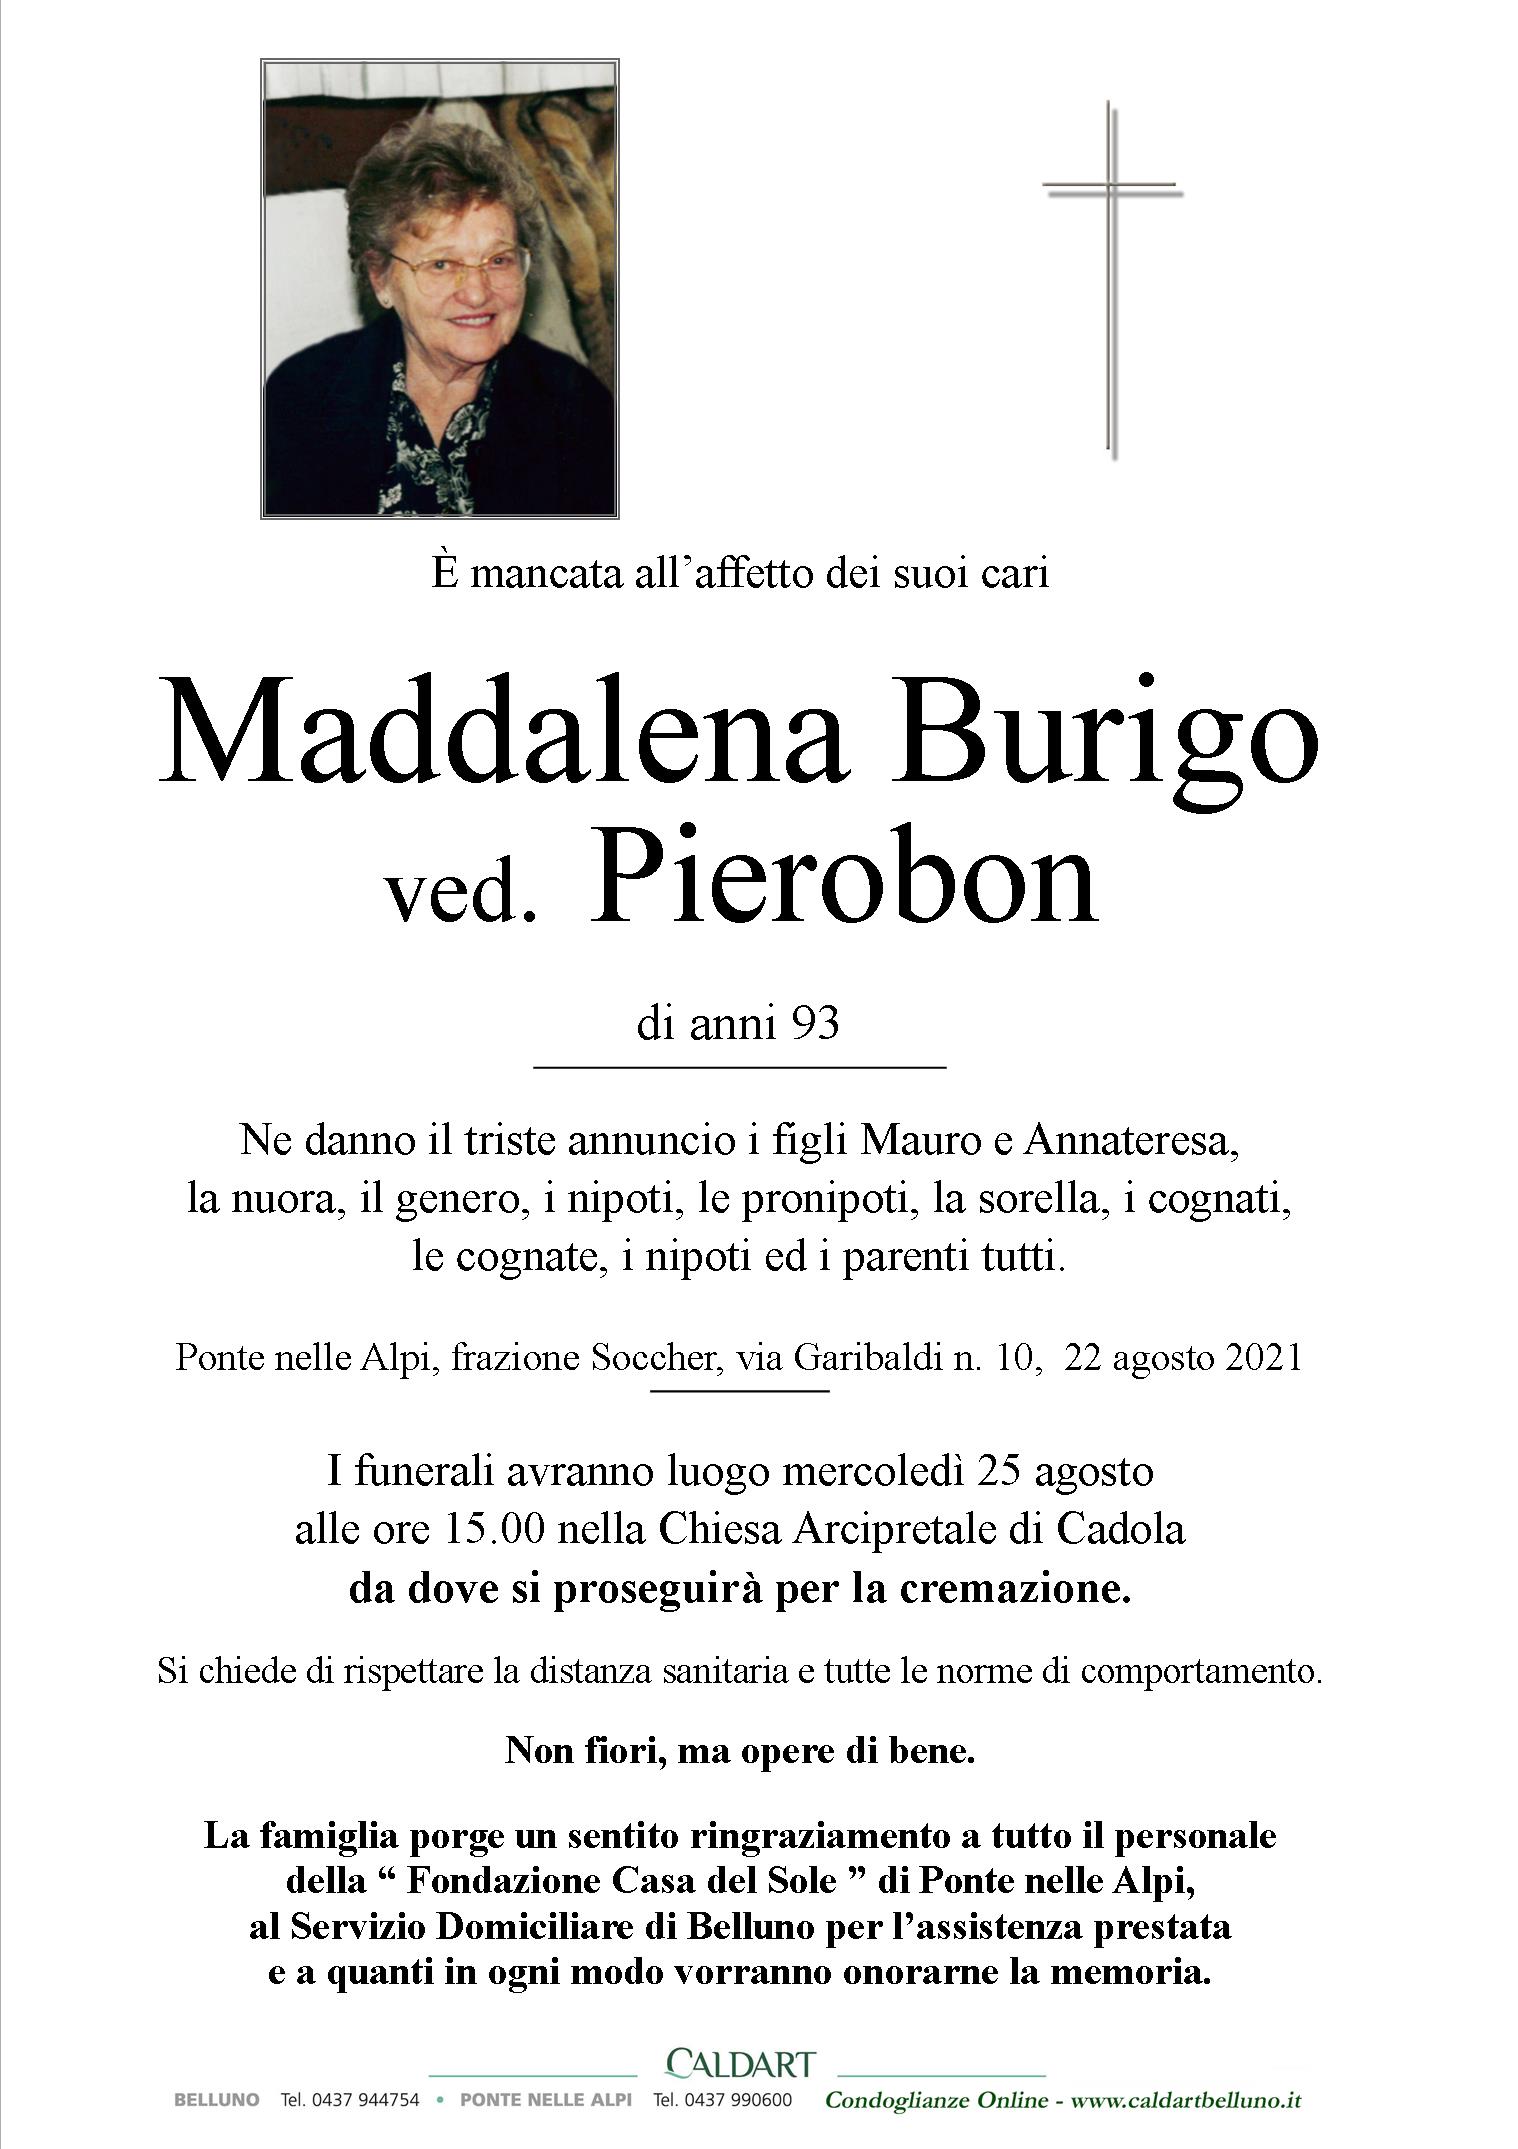 Burigo Maddalena